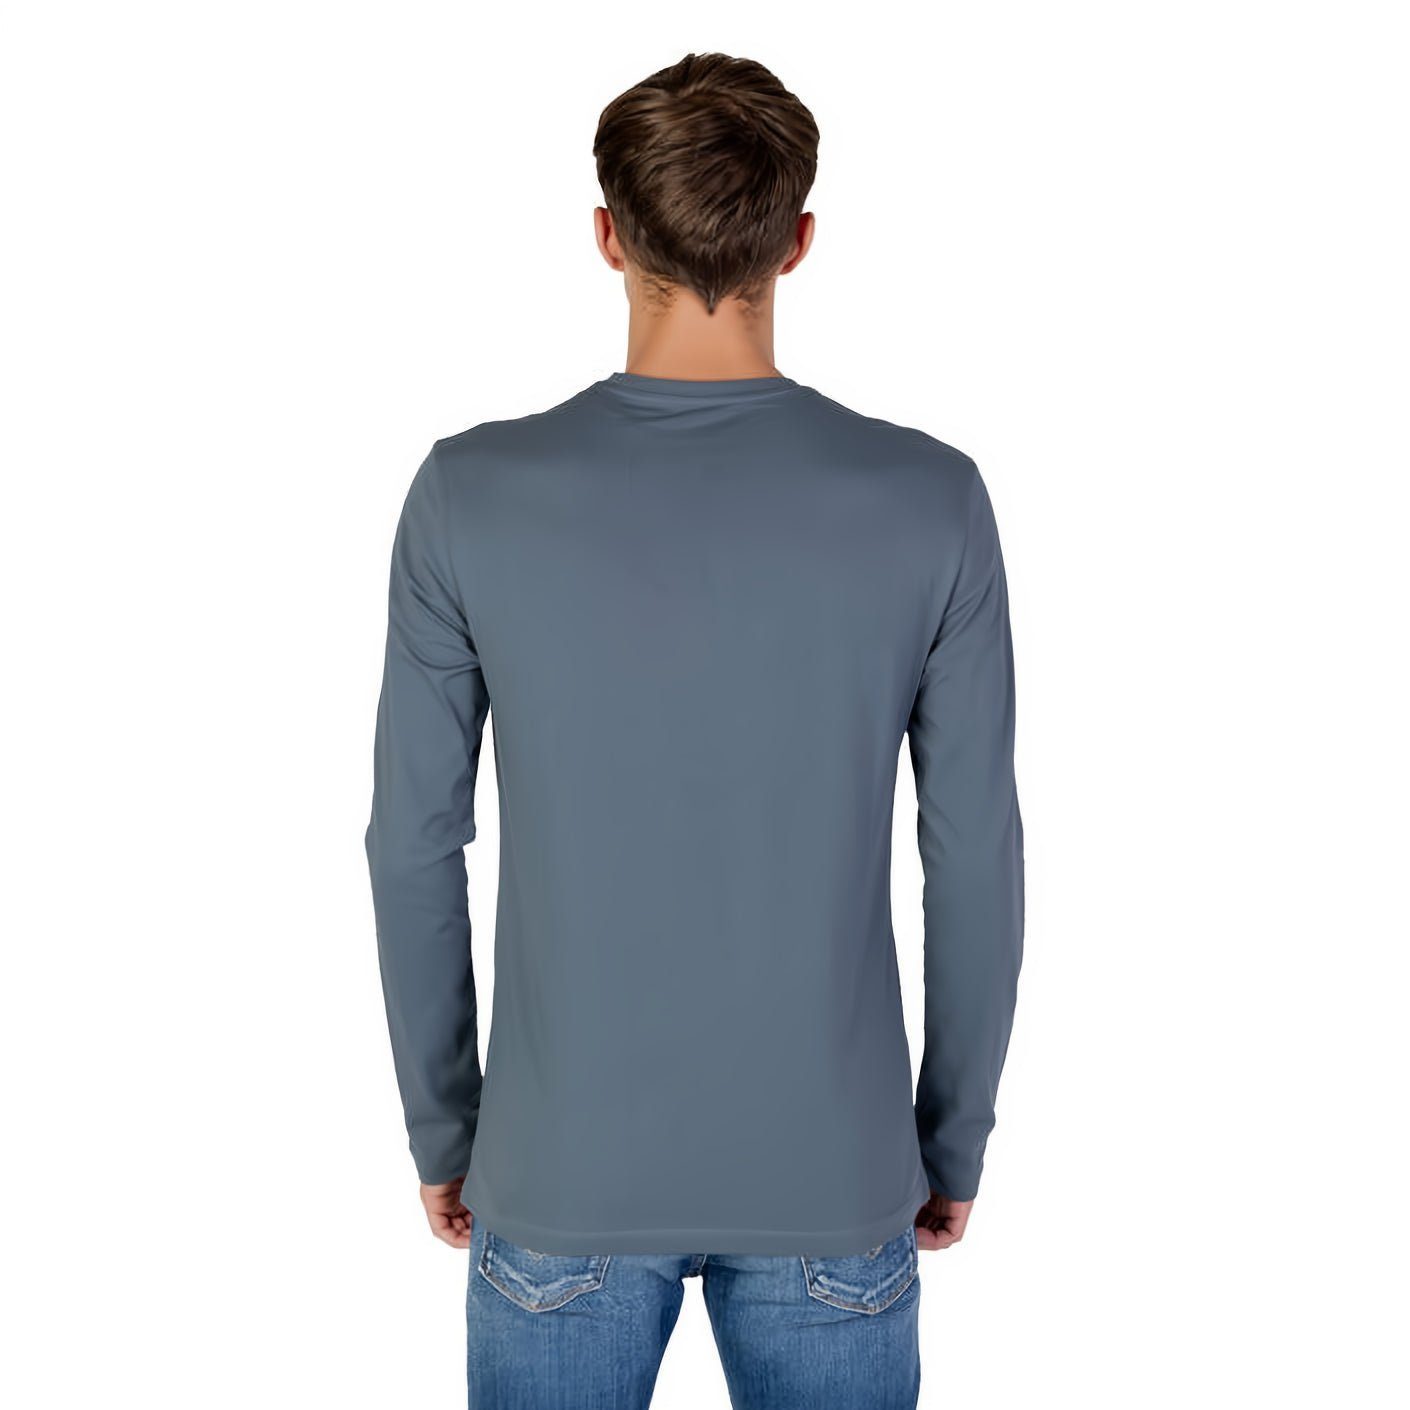 ARMANI EXCHANGE T-Shirt kurzarm, Rundhals, für Must-Have Kleidungskollektion! ein Ihre